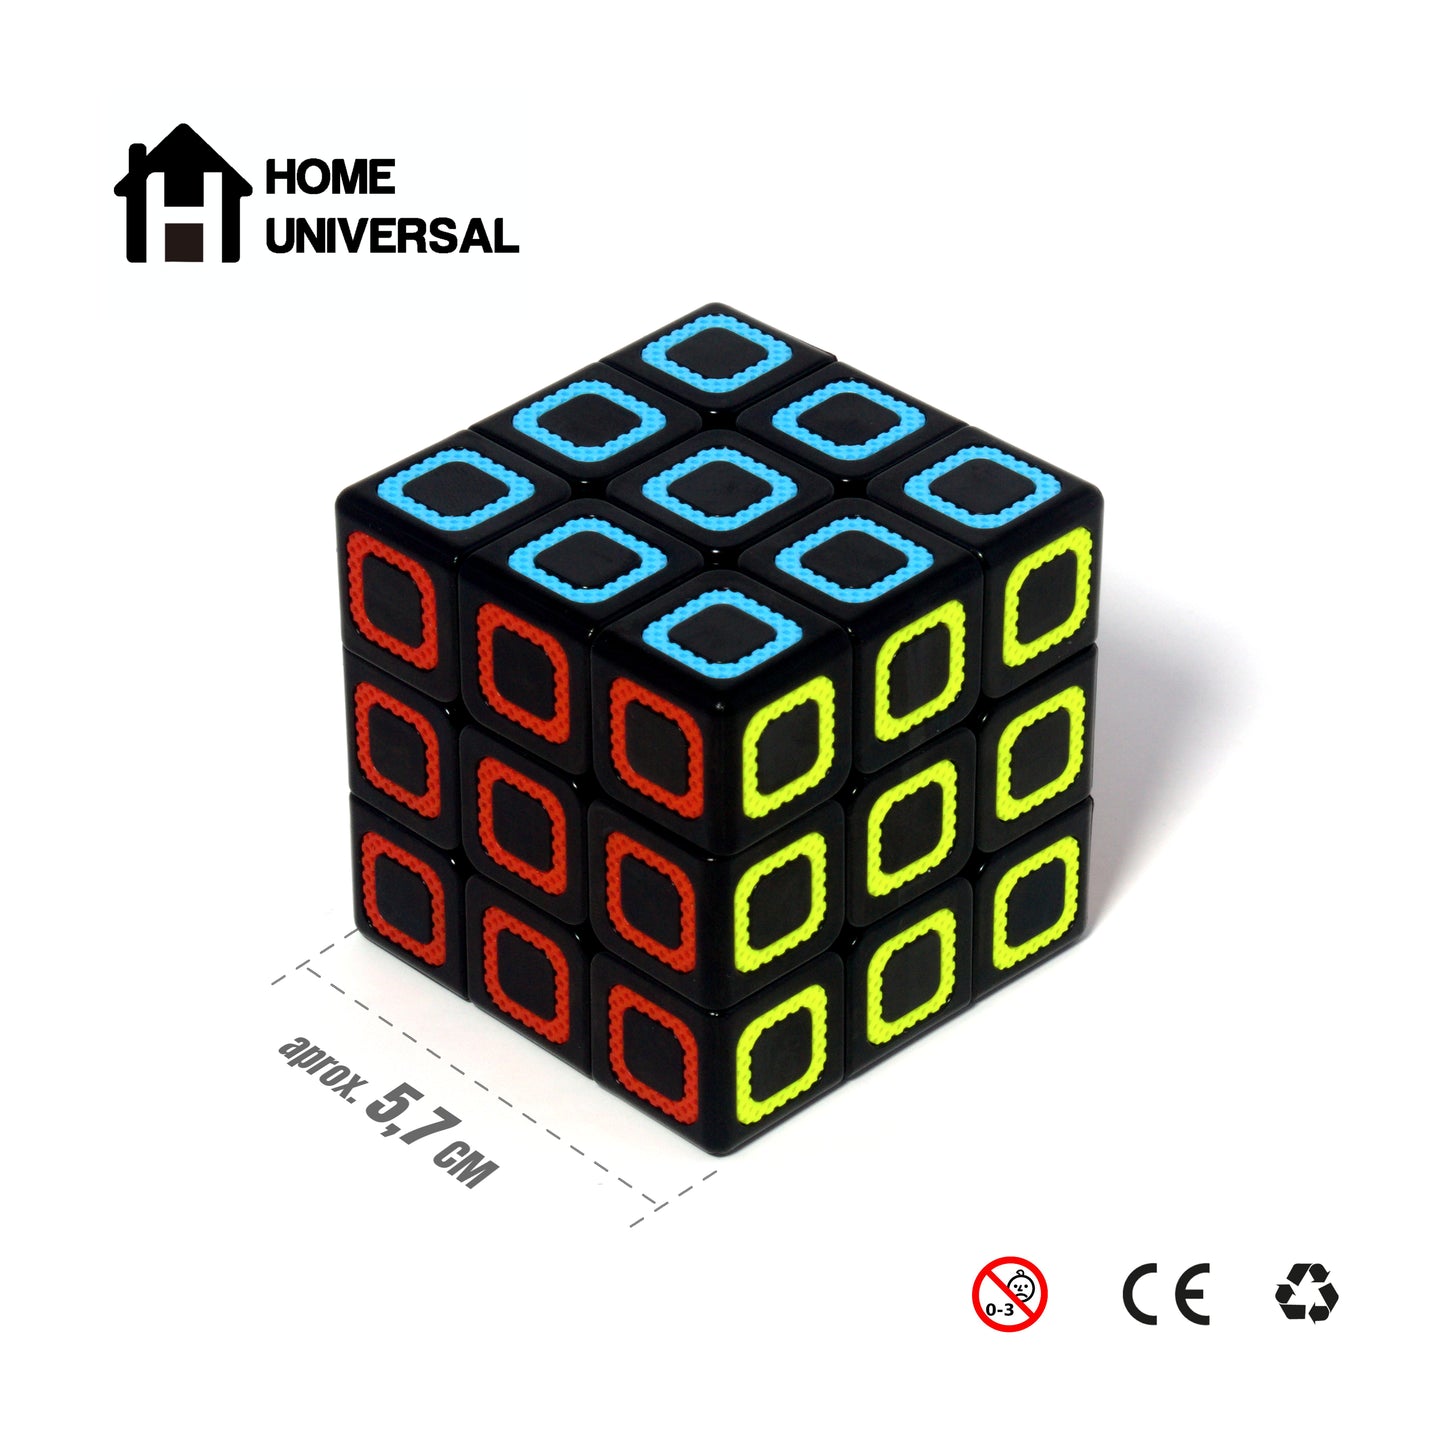 Home UNIVERSAL | Cubo Rompecabezas (Neón)